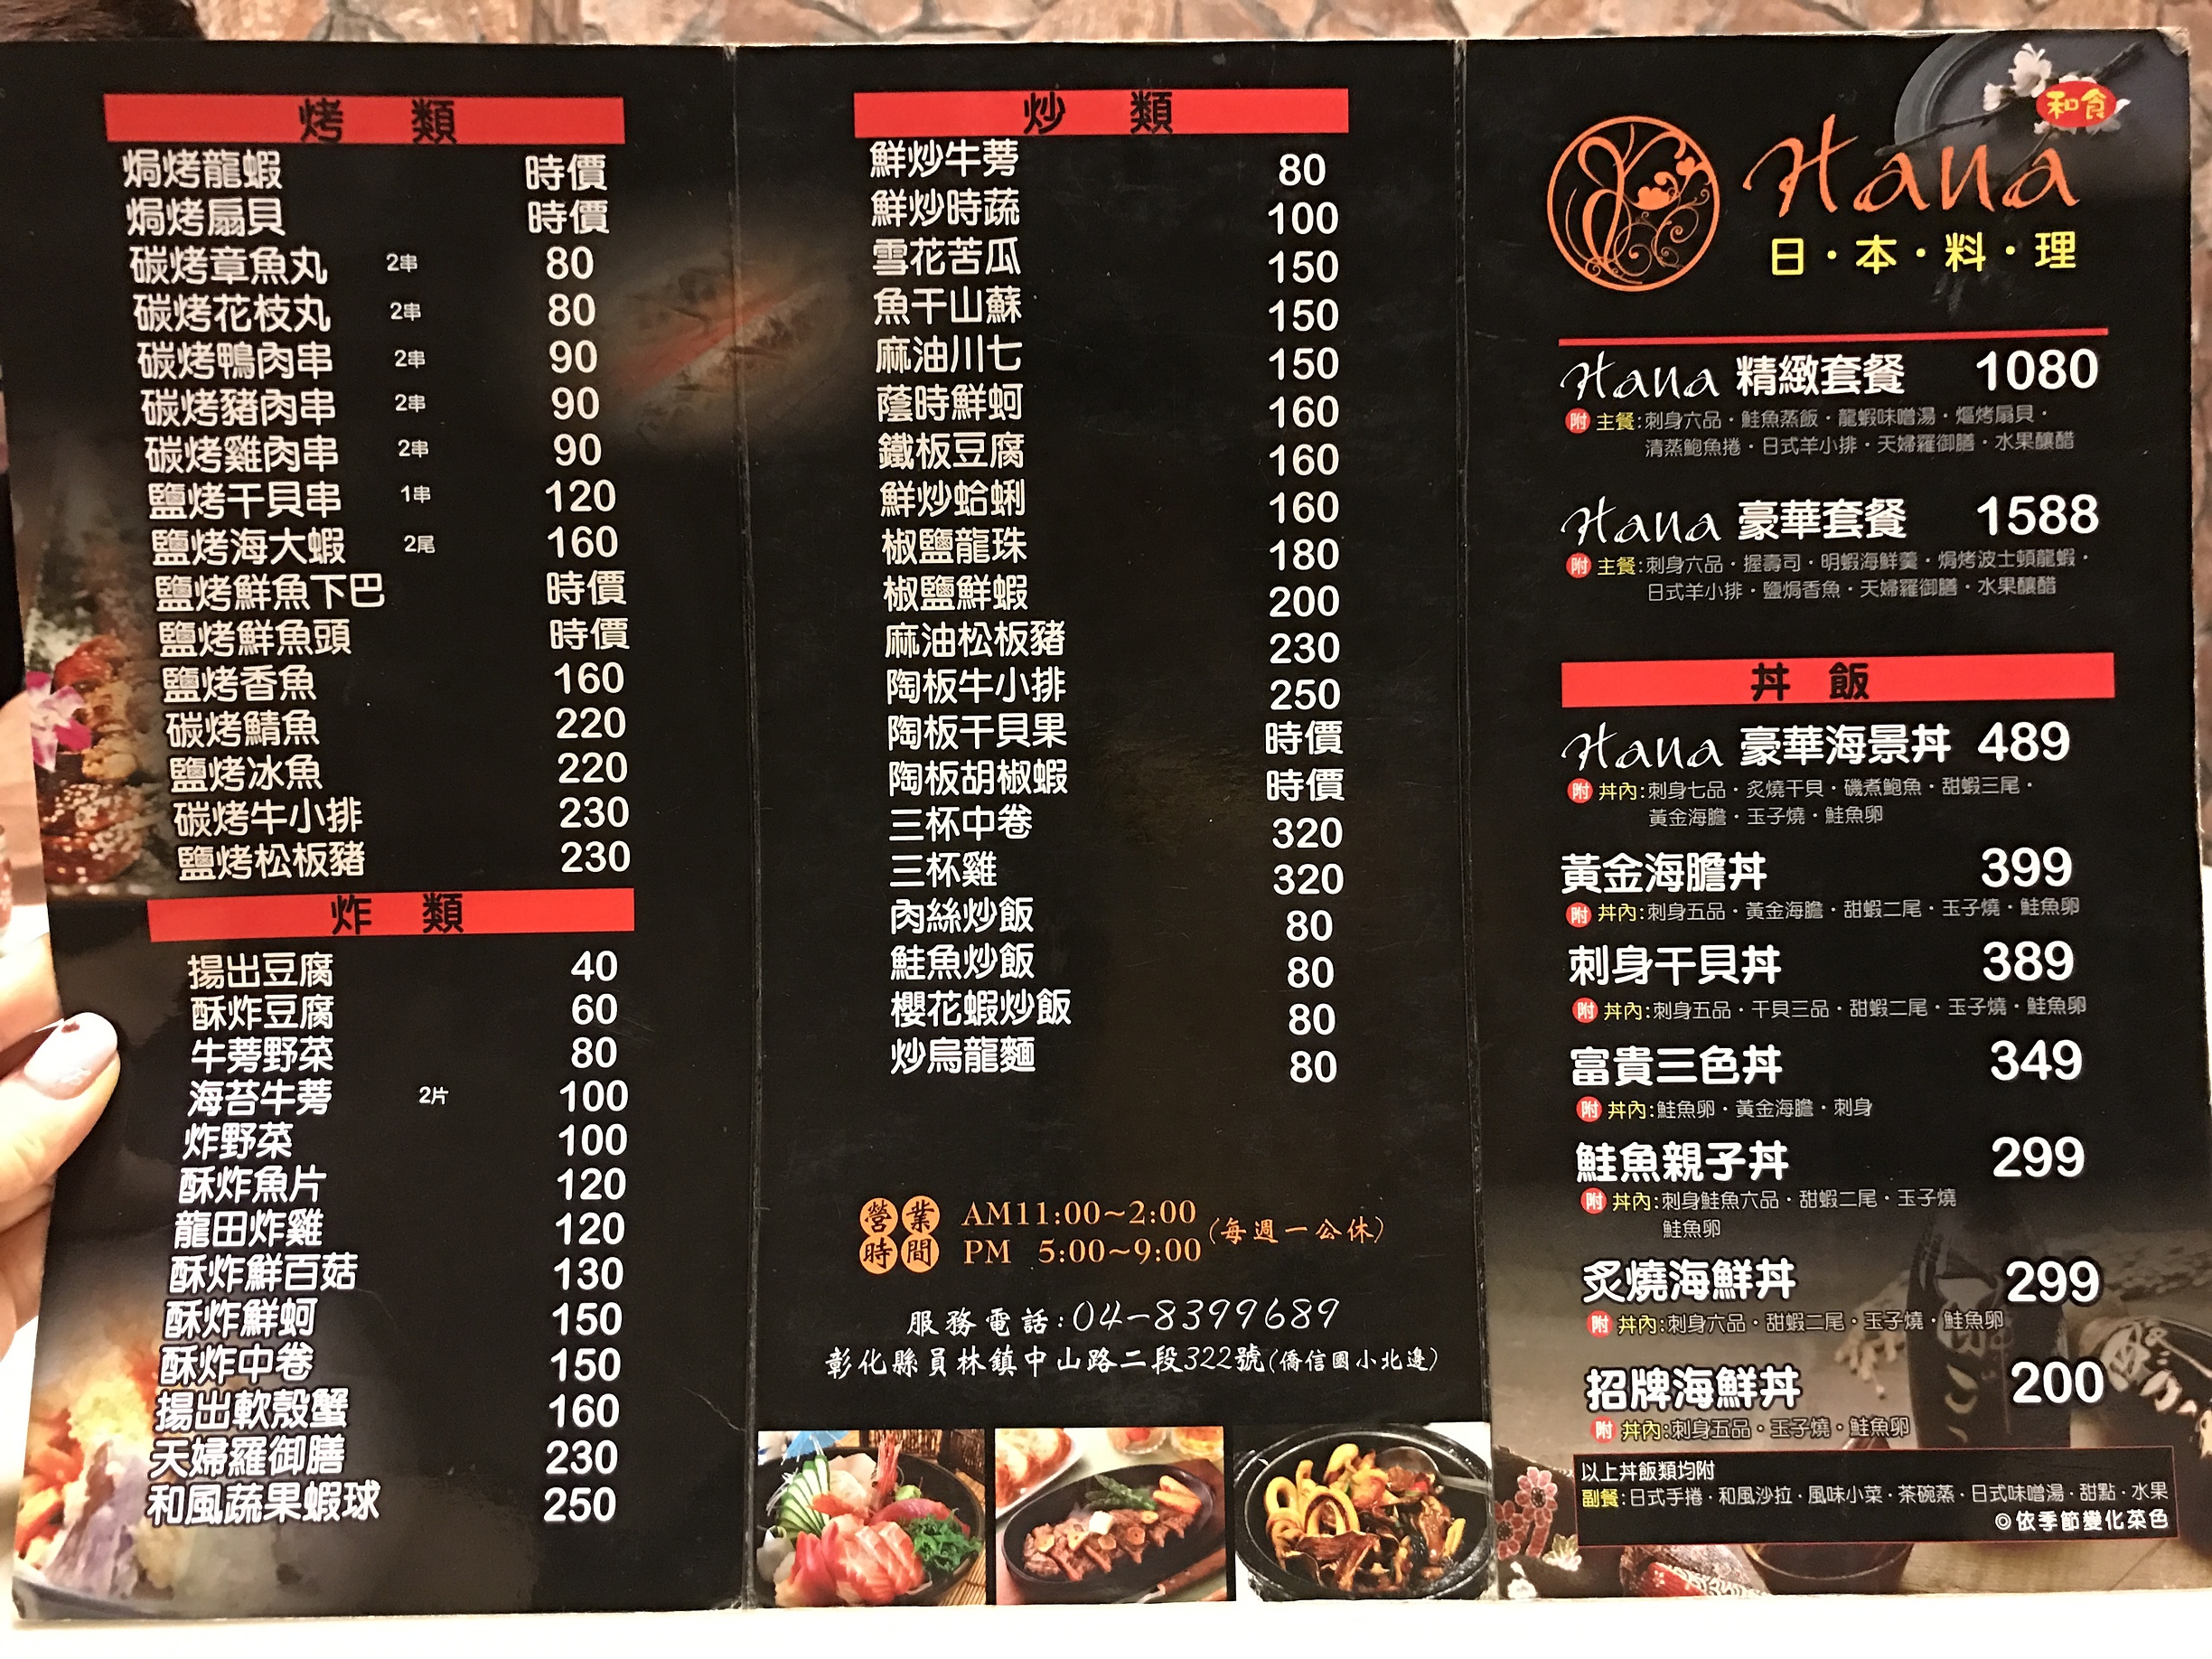 2016-11-13 202116.JPG - 員林餐廳